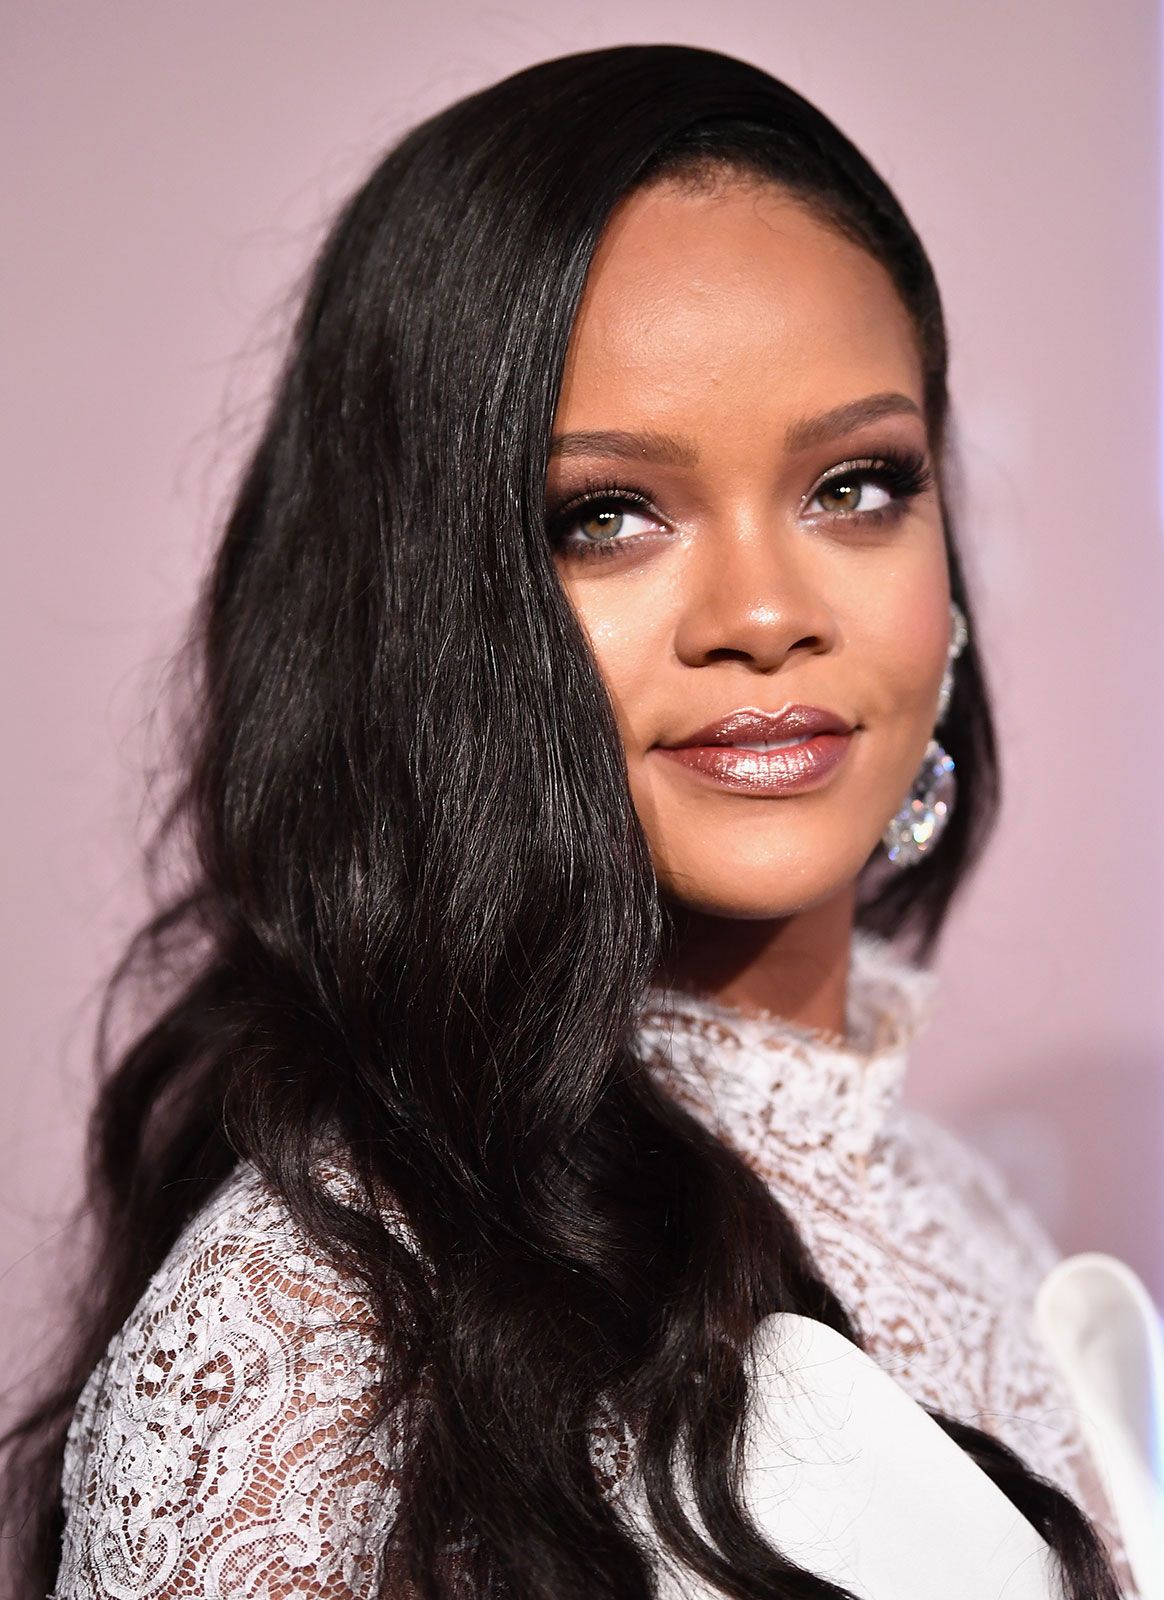  Rihanna, biographie